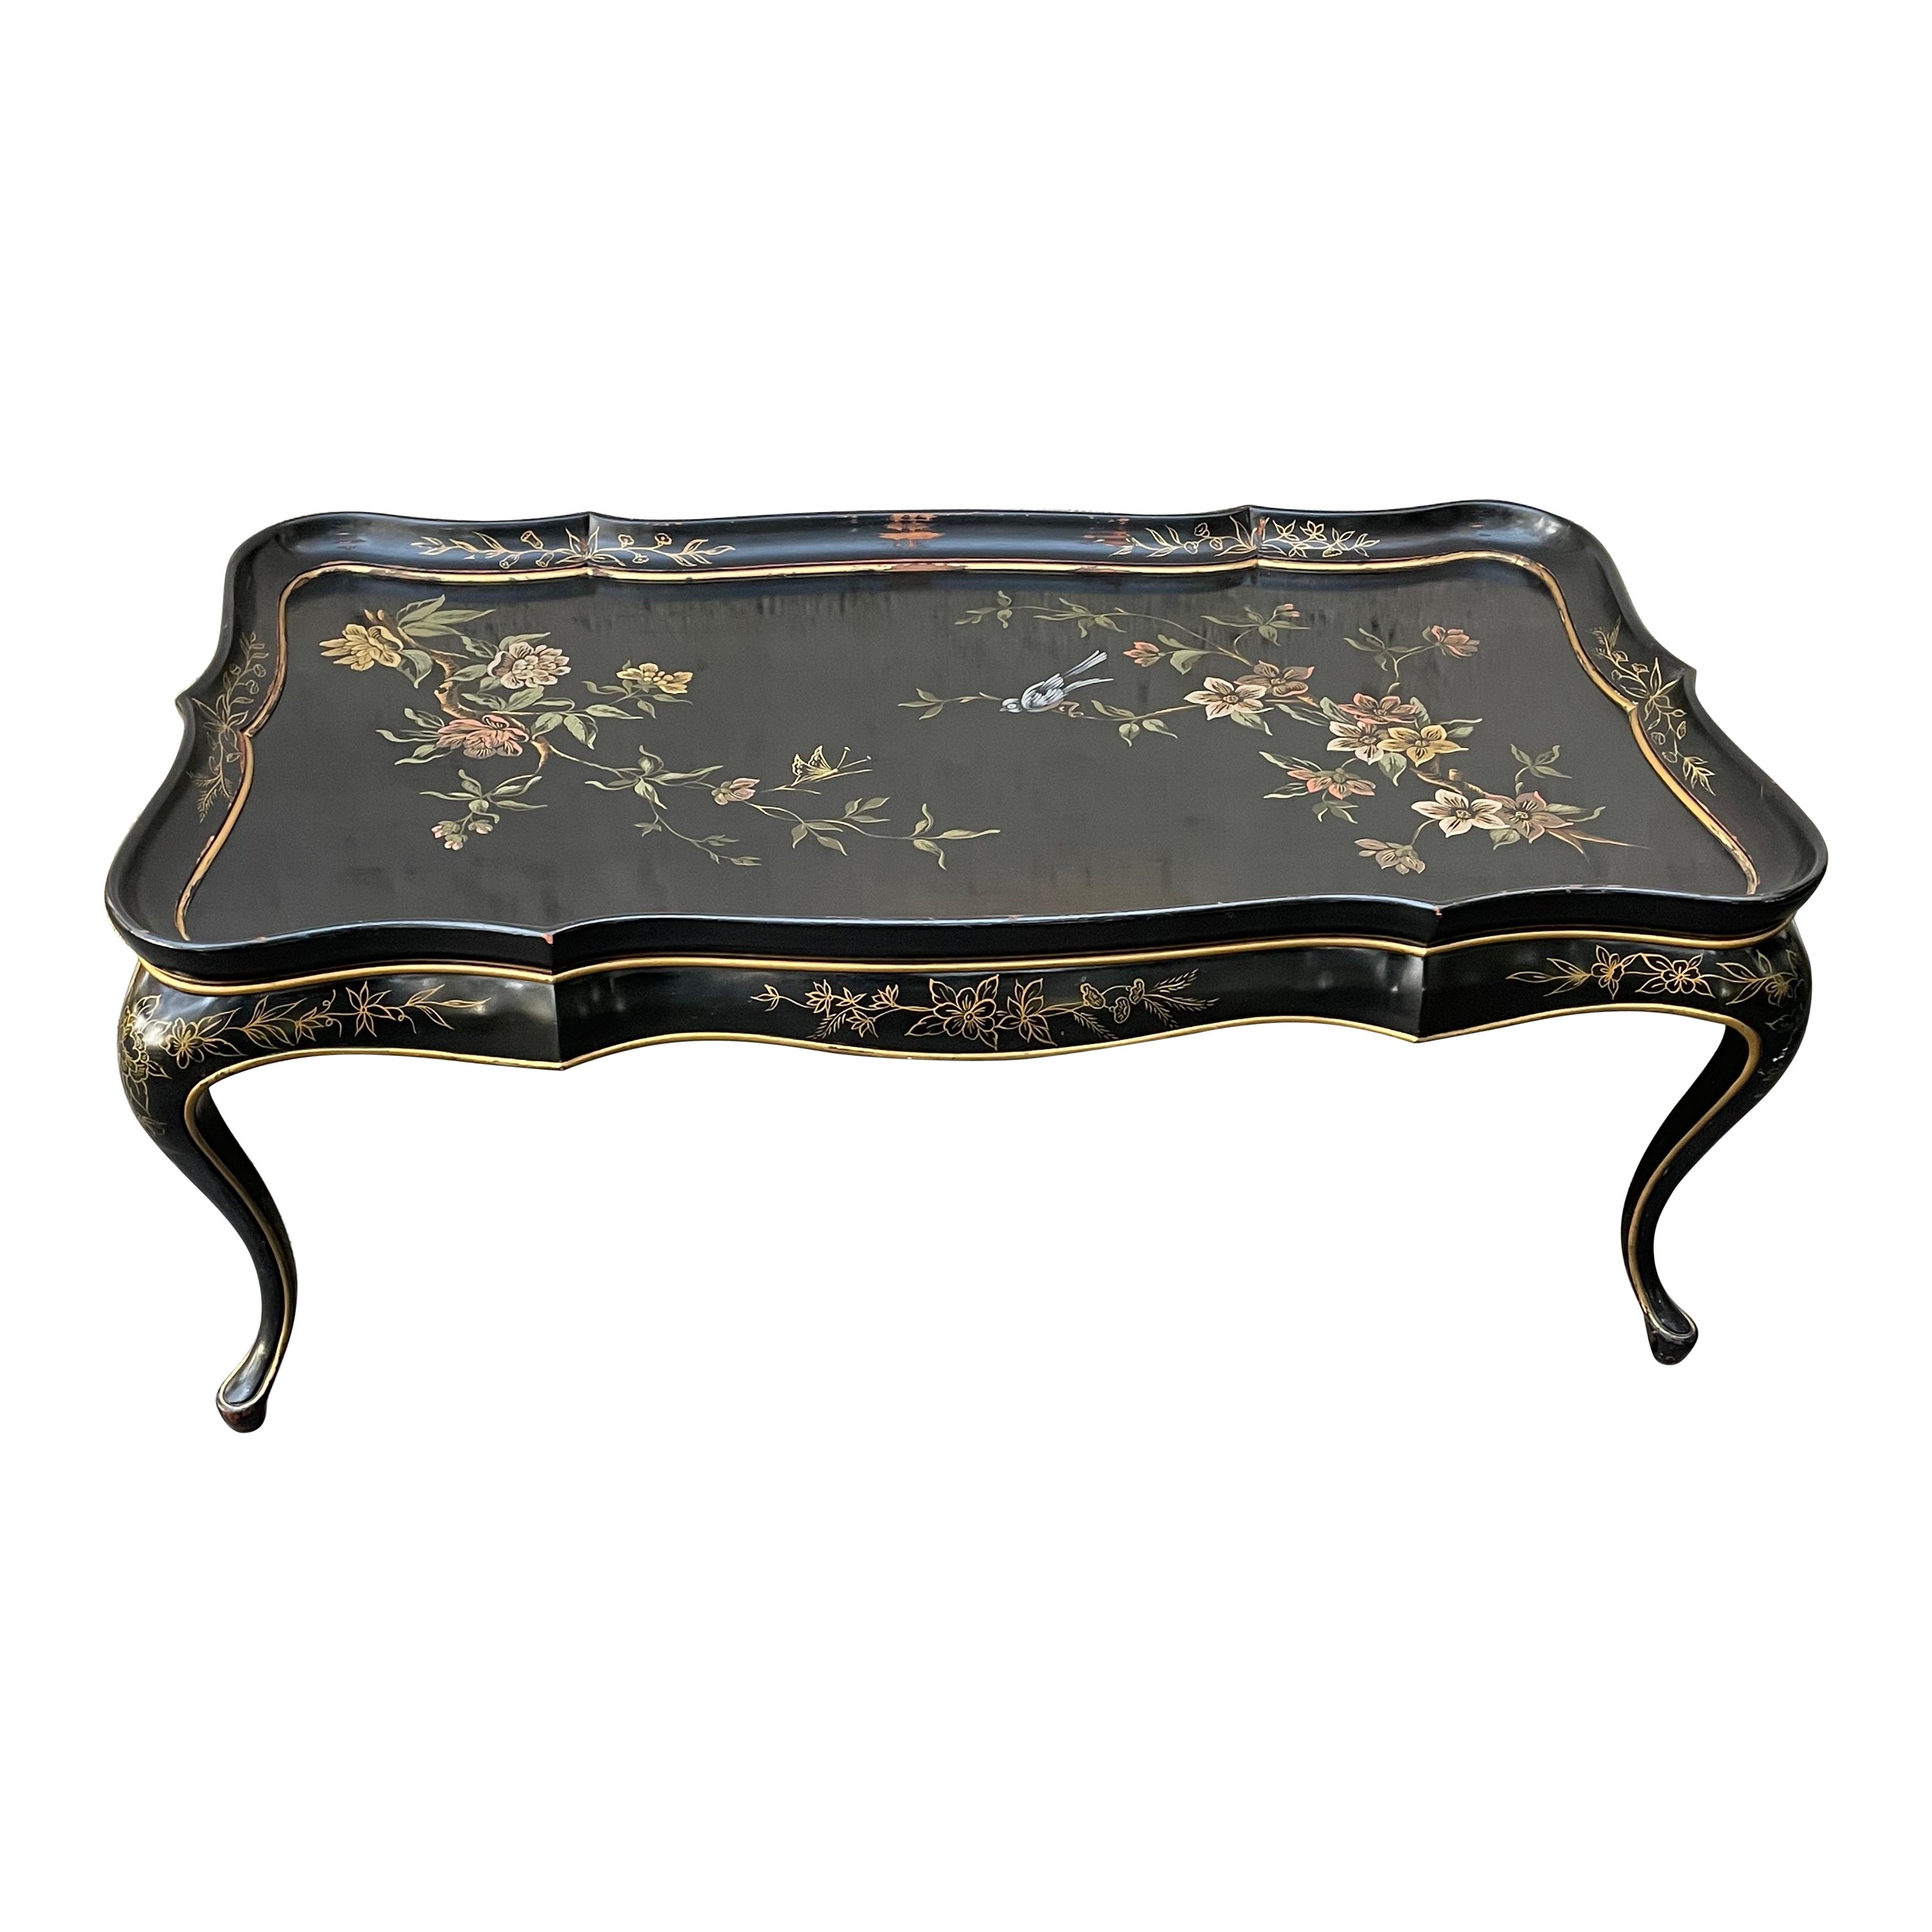 Table basse laquée noire Hollywood Regency avec motif floral peint à la main